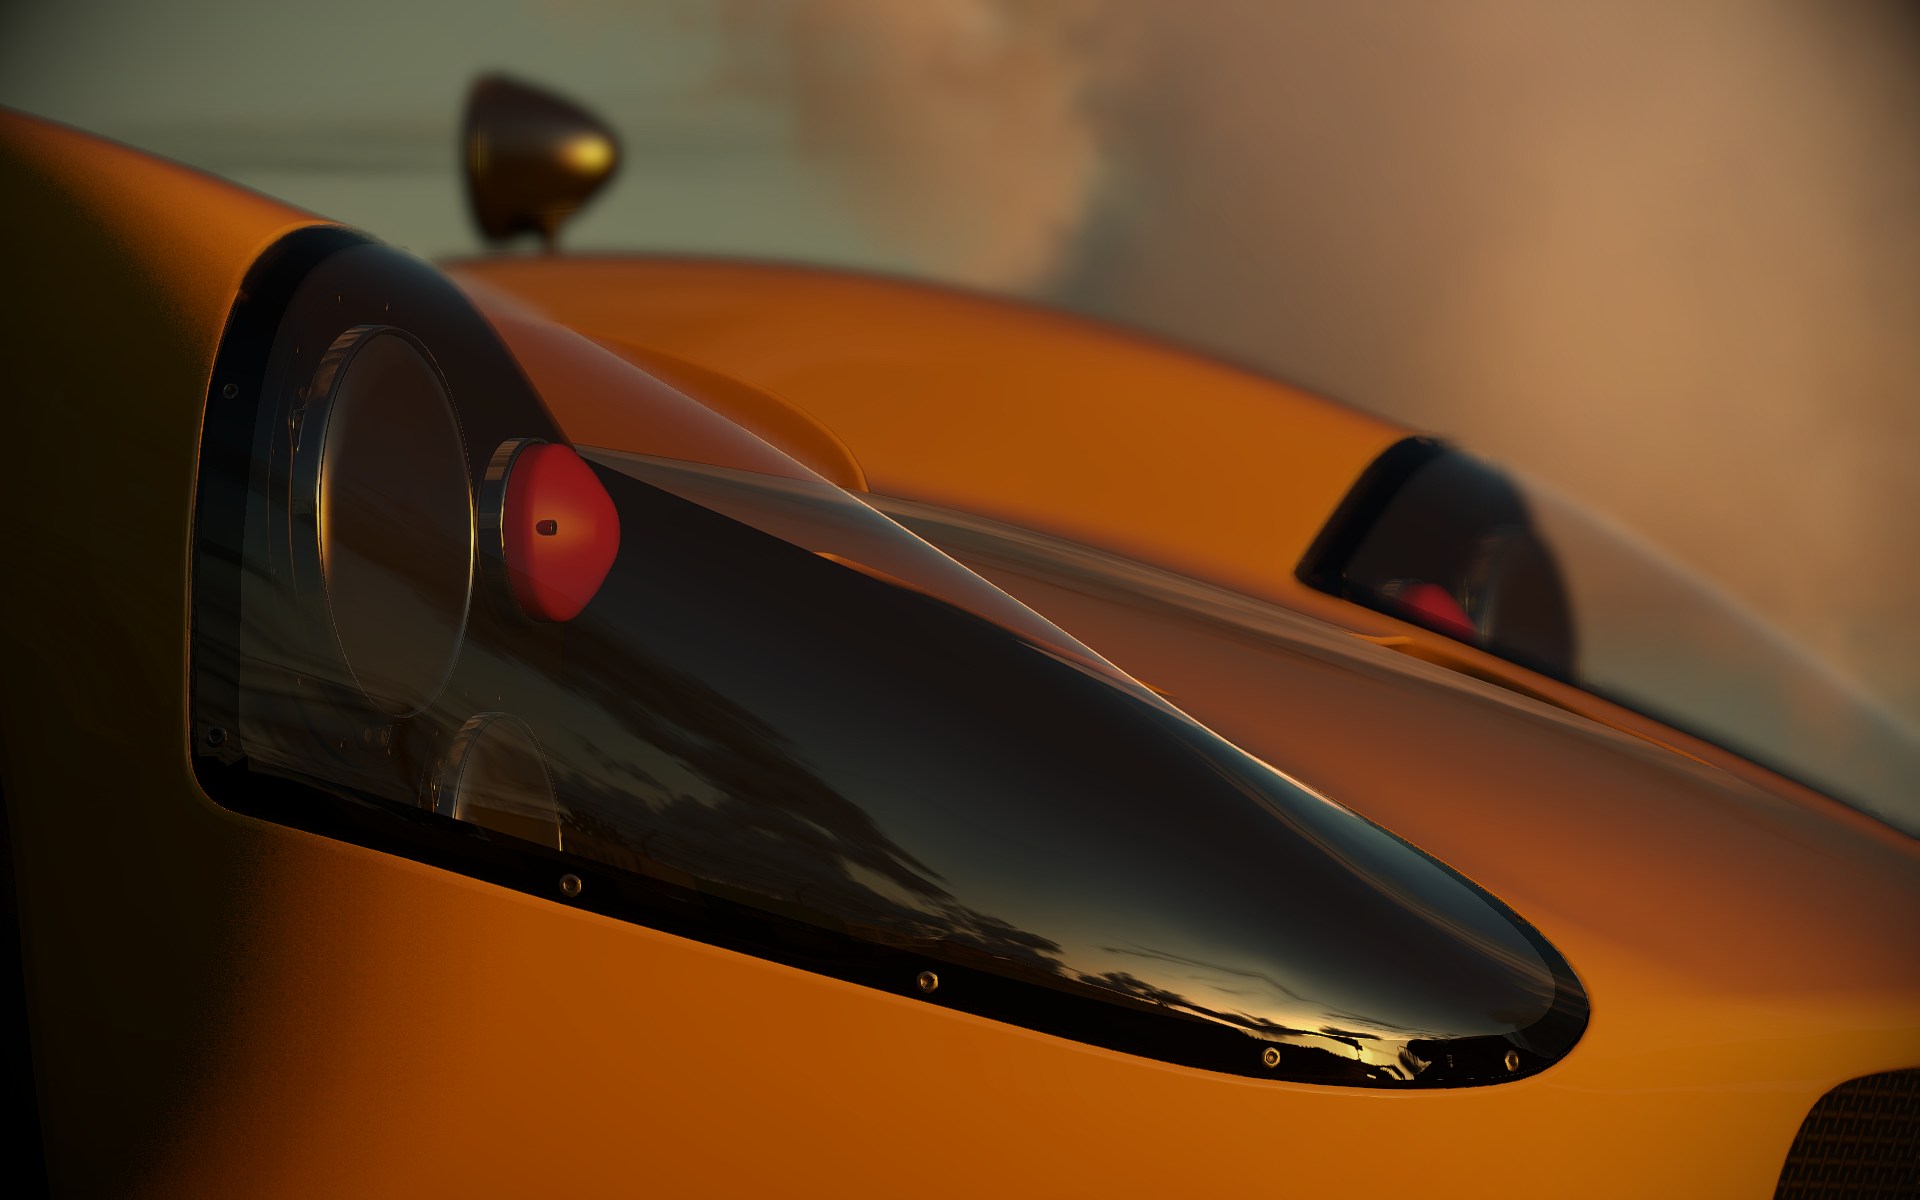 Immagine pubblicata in relazione al seguente contenuto: Nuovi screenshots non ufficiali del racing game Project CARS | Nome immagine: news18674_Project_CARS_screenshot_7.jpg